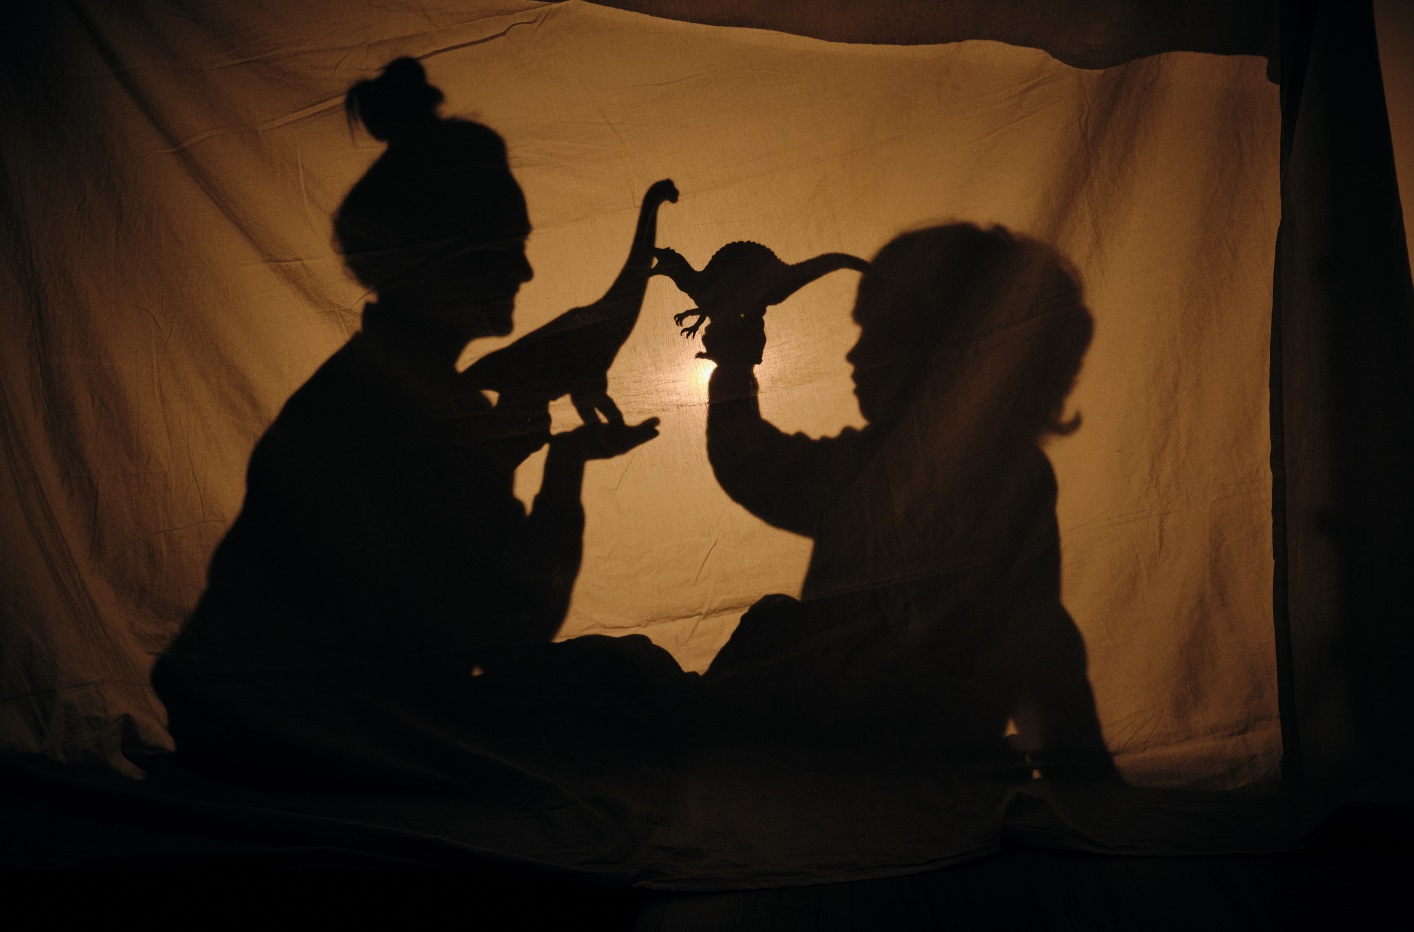 Teatro de sombras con la silueta de una mujer y un niño jugando